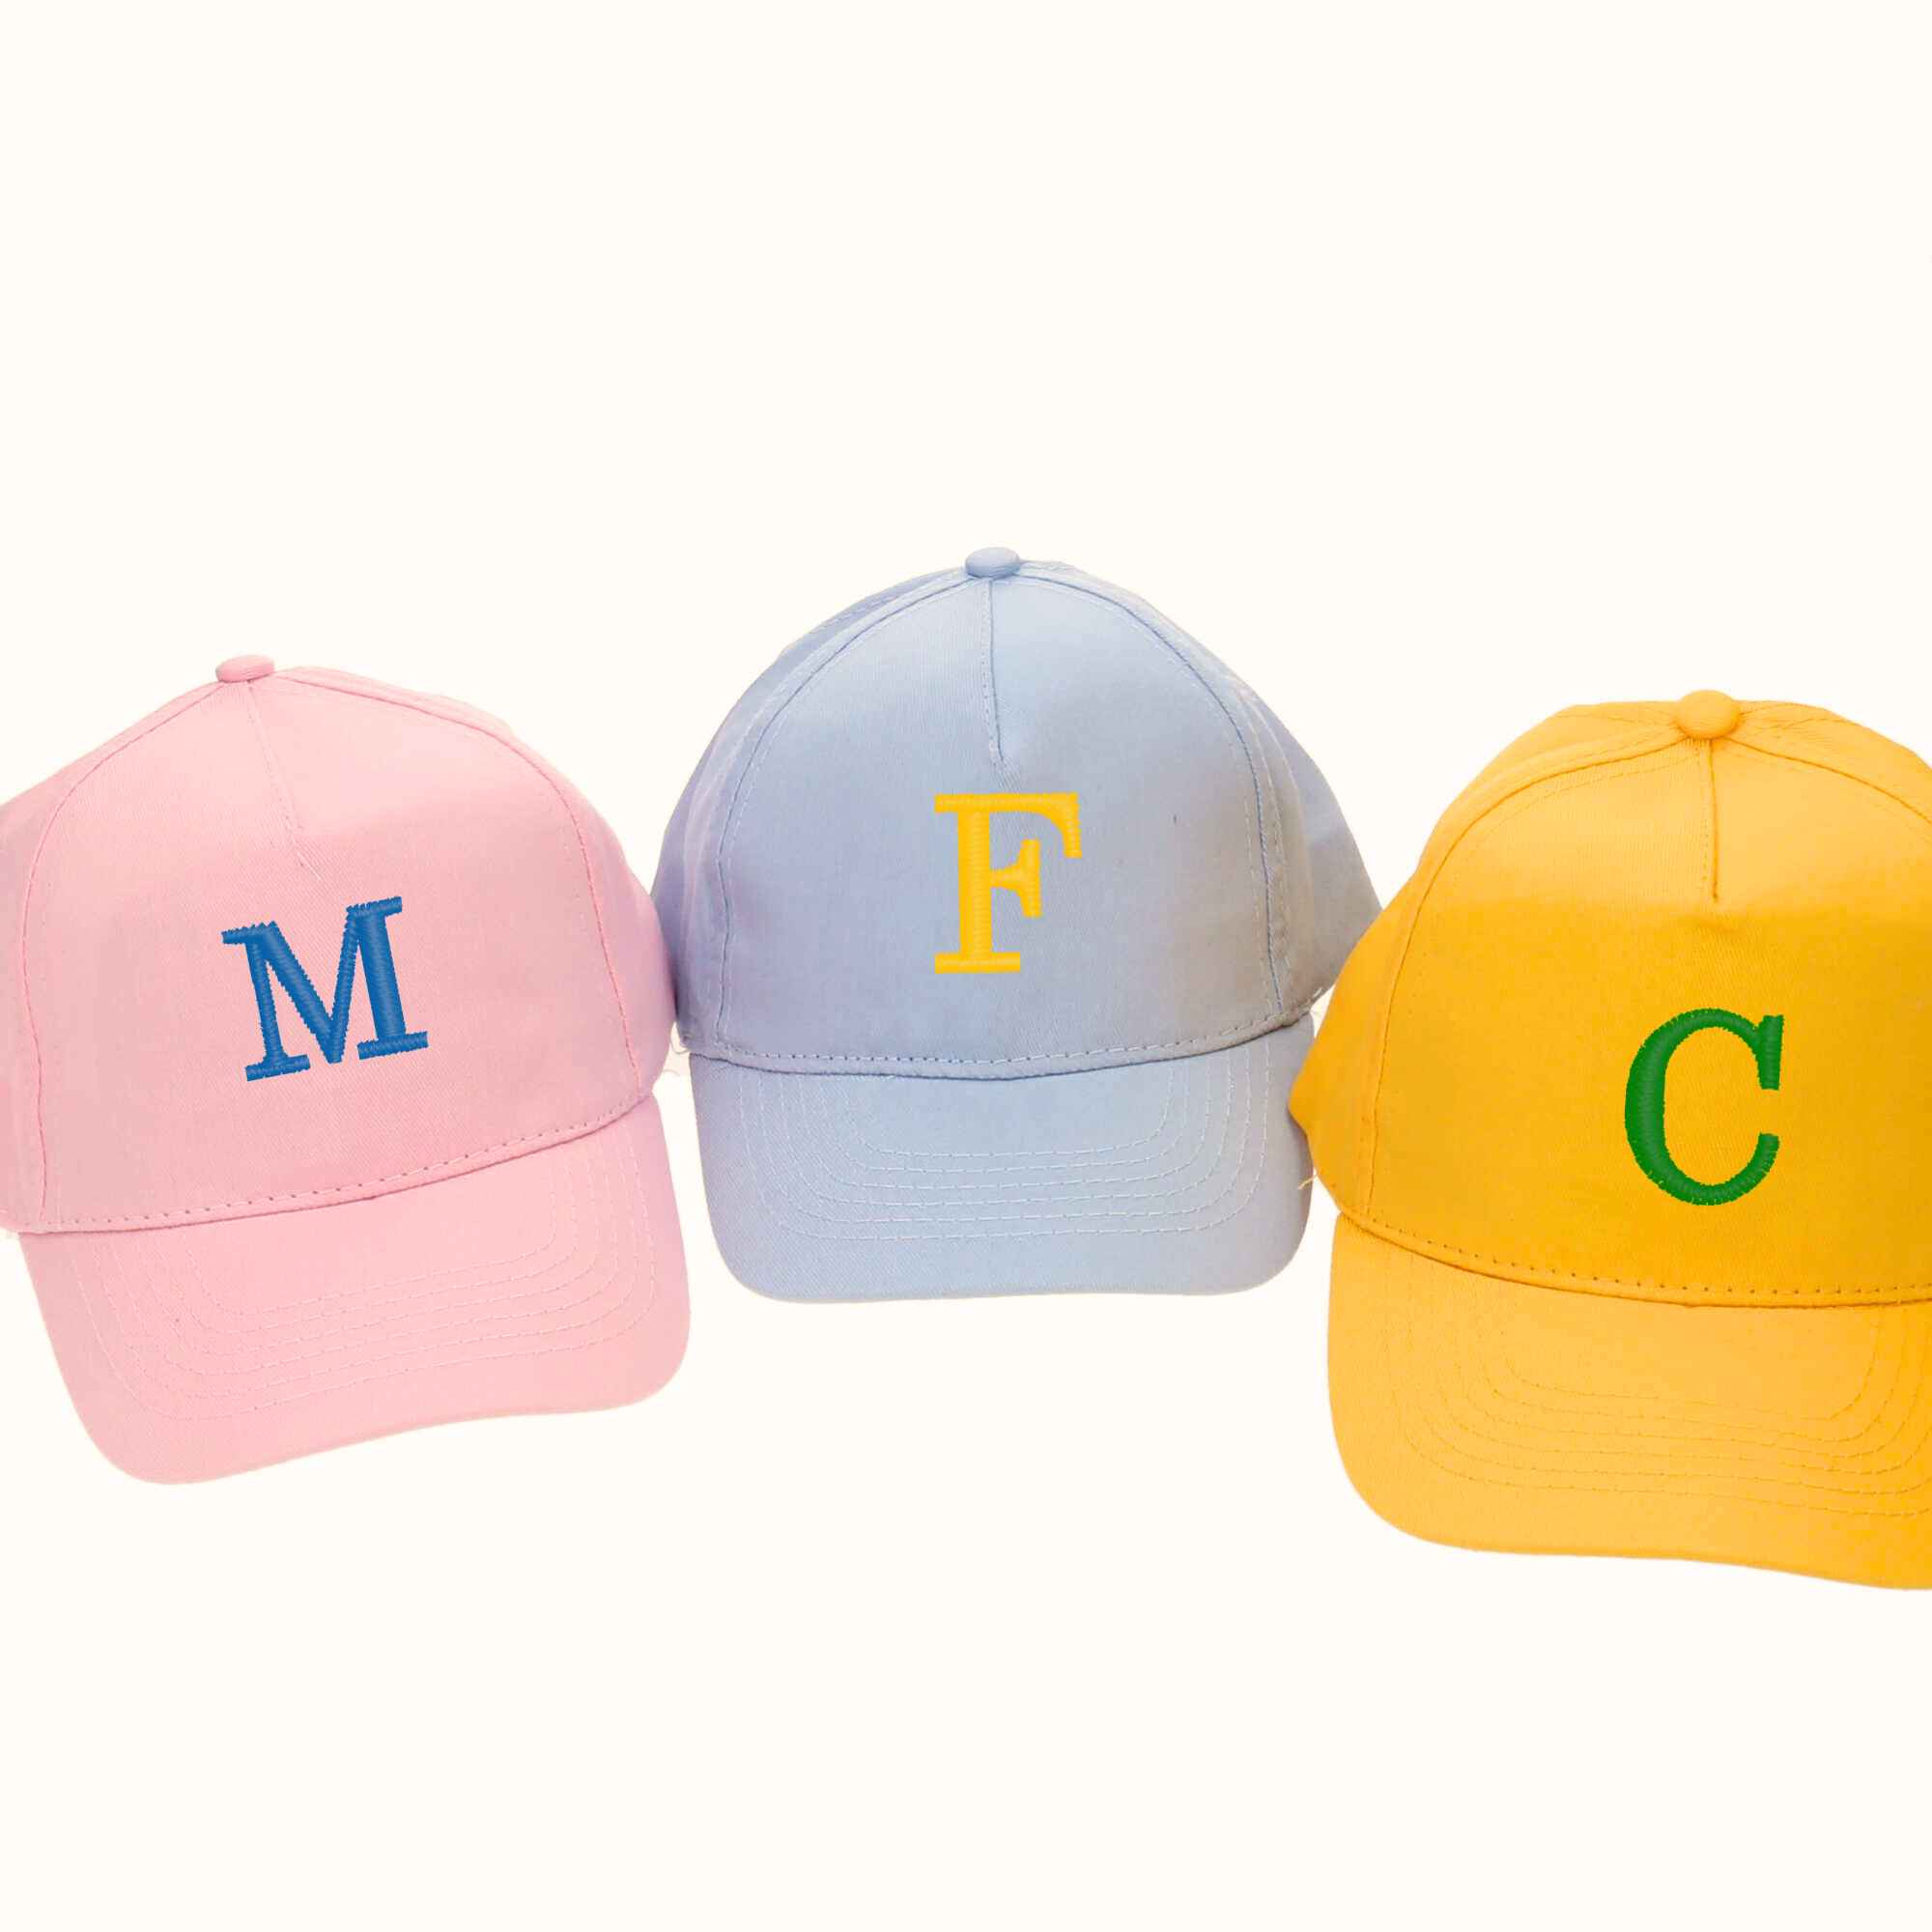 Caps für Kids in verschiedenen Farben mit den Initialen bestickt